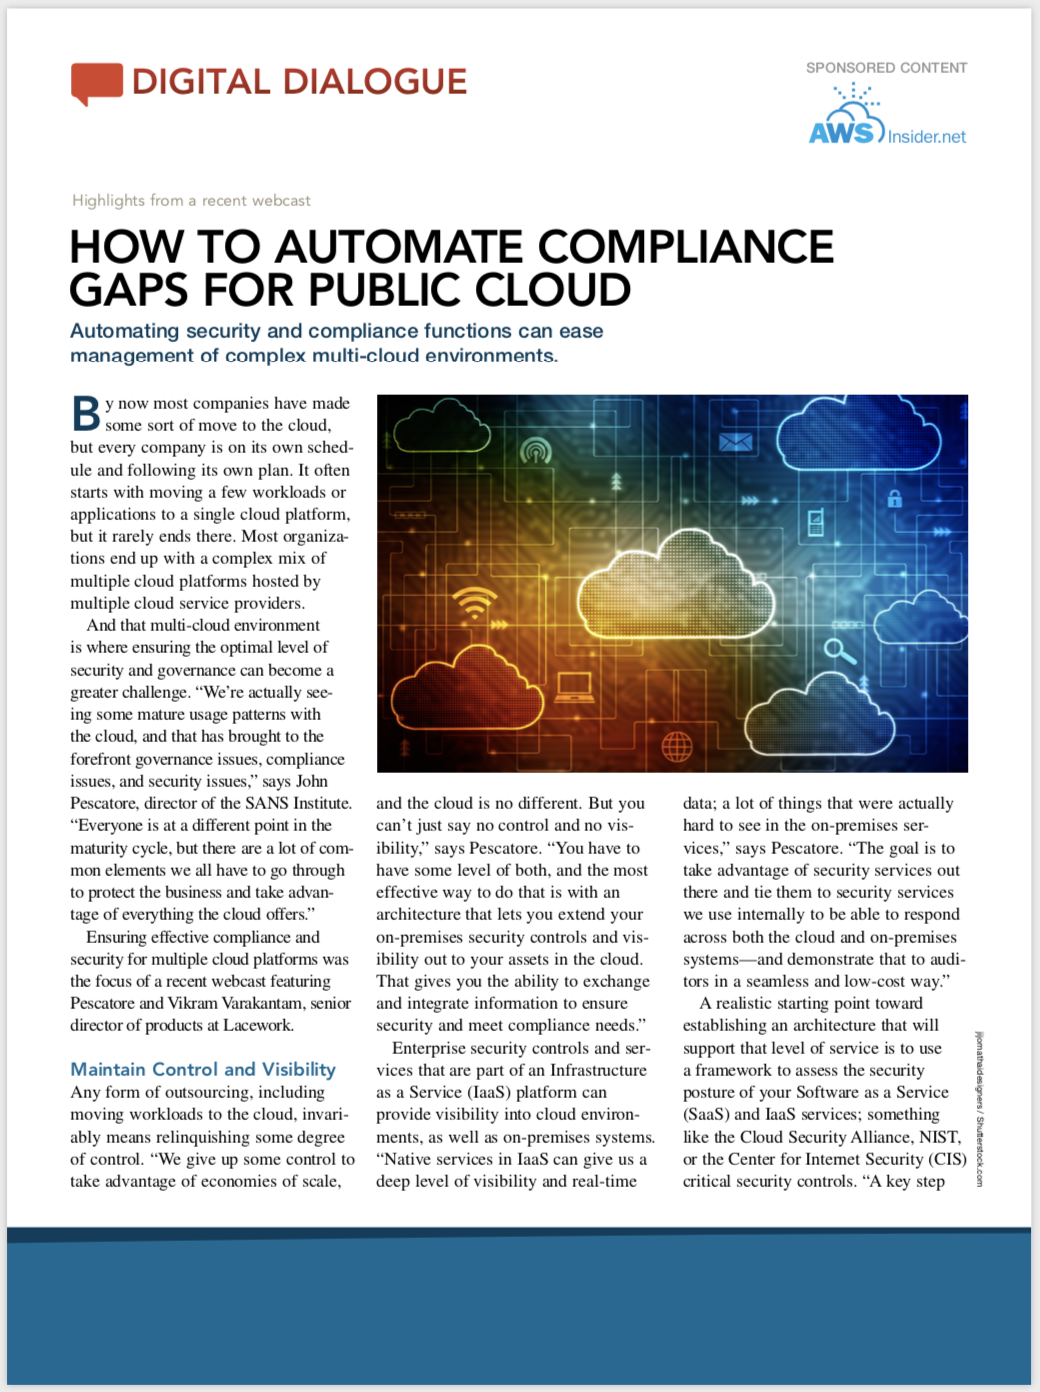 automate-compliance-gaps-public-cloud.png